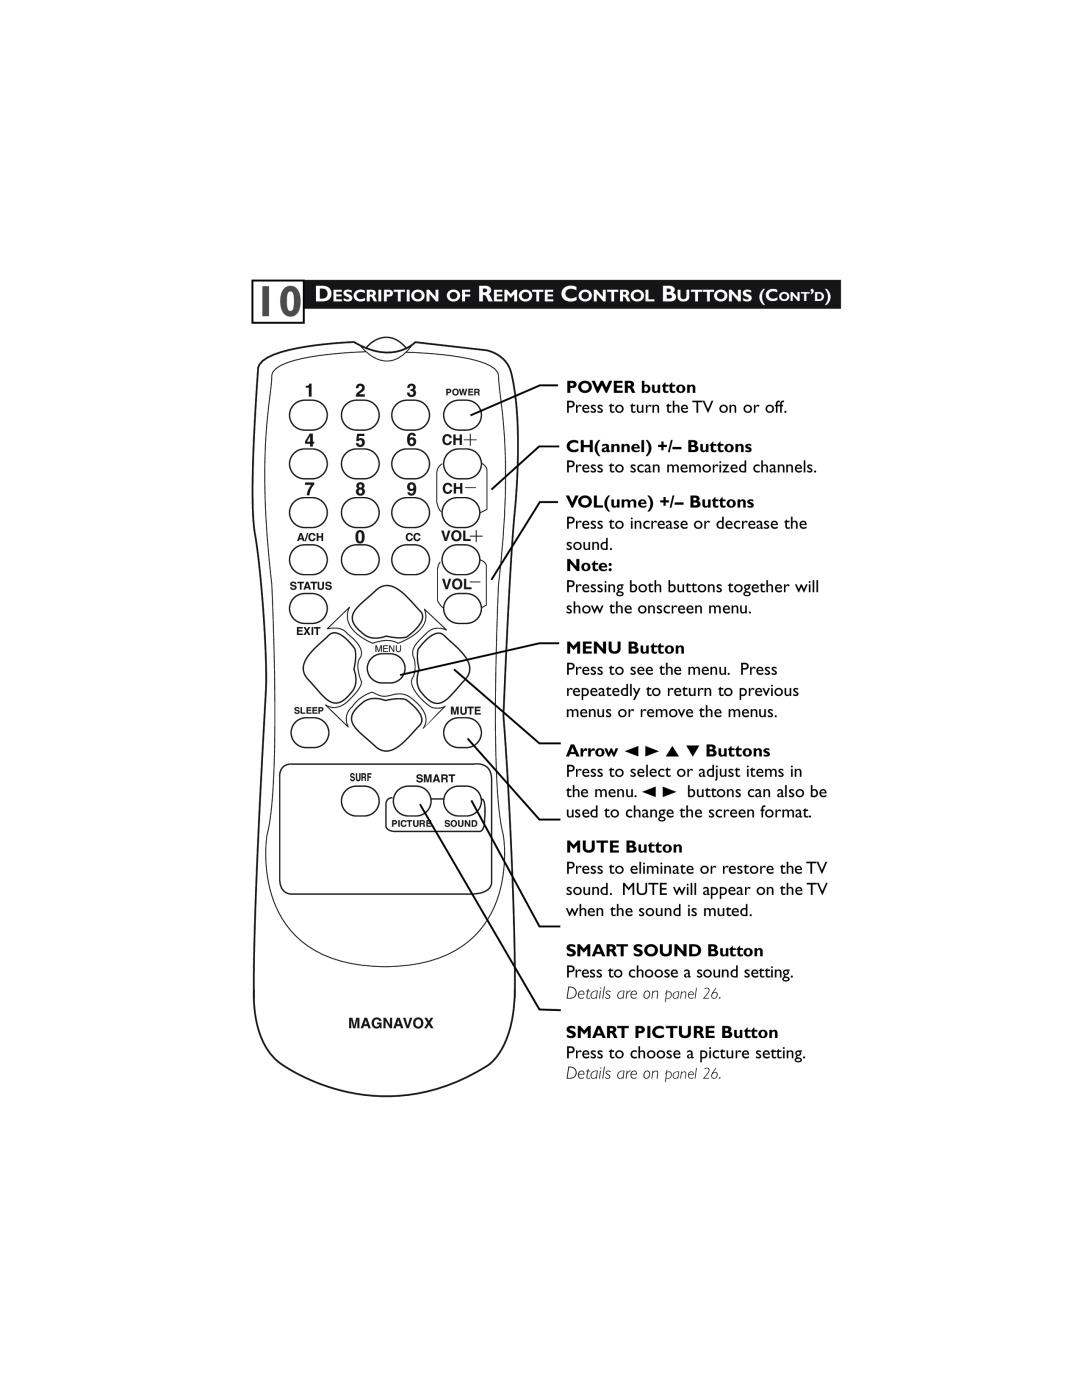 Magnavox 32MT3305/17 user manual Description Of Remote Control Buttons Cont’D, 1 2 3 POWER 4 5 6 CH 7 8 9 CH, POWER button 